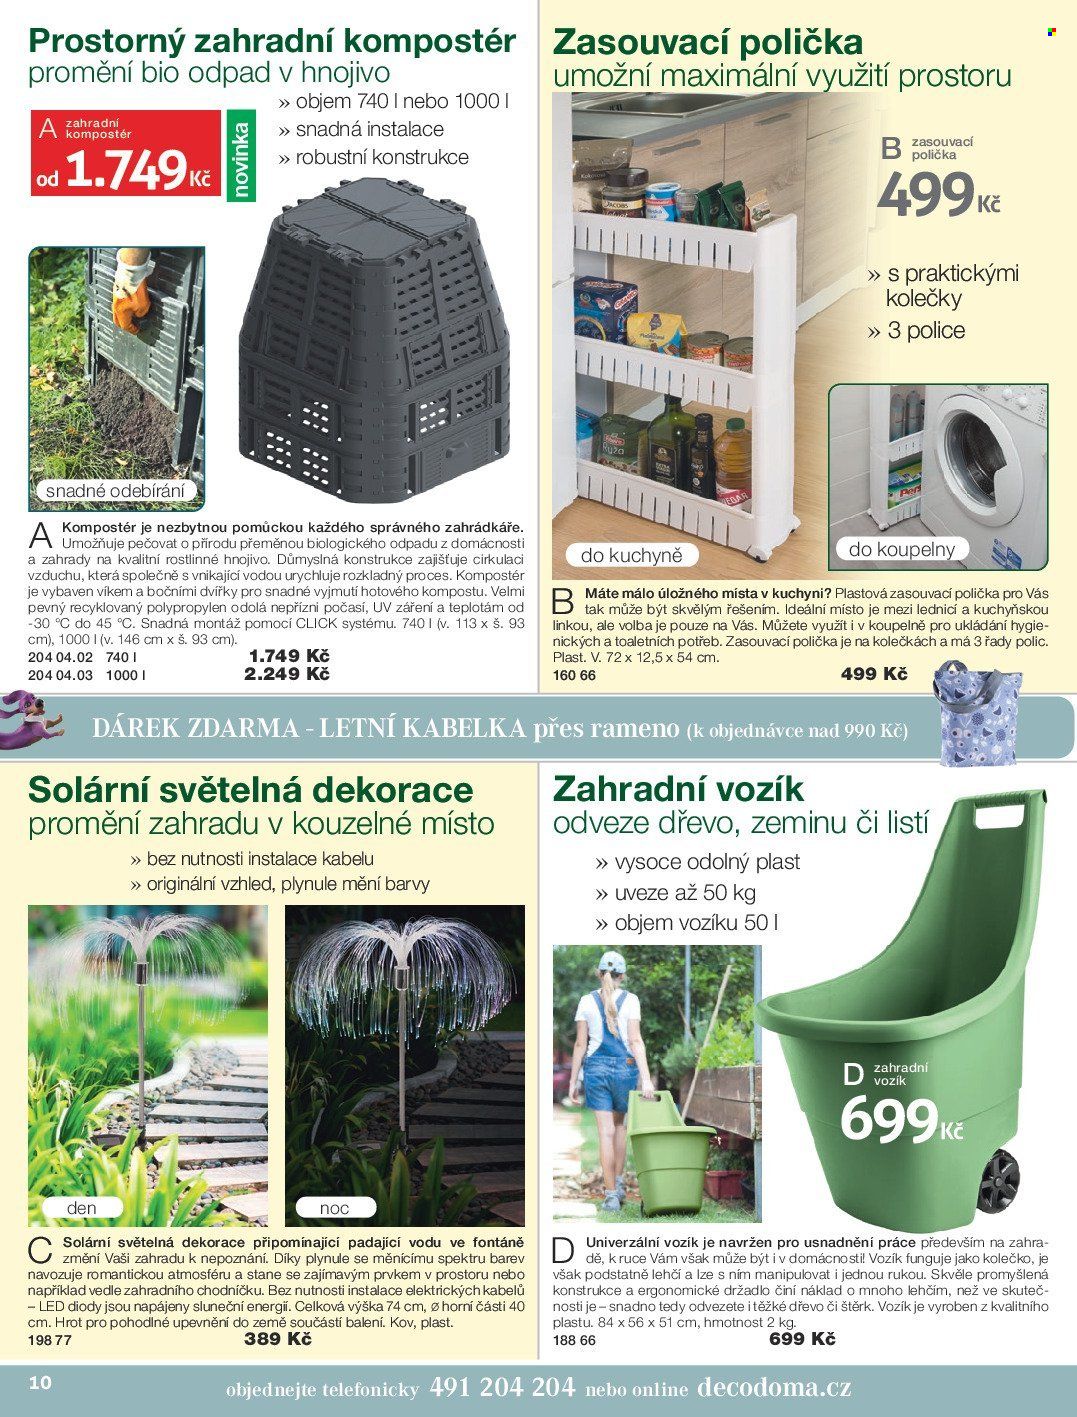 thumbnail - Leták decoDoma - Produkty v akci - polička, ruční vozík, dekorace, světelná dekorace, kompostér, kolečko, zahradní vozík, kabelka. Strana 10.